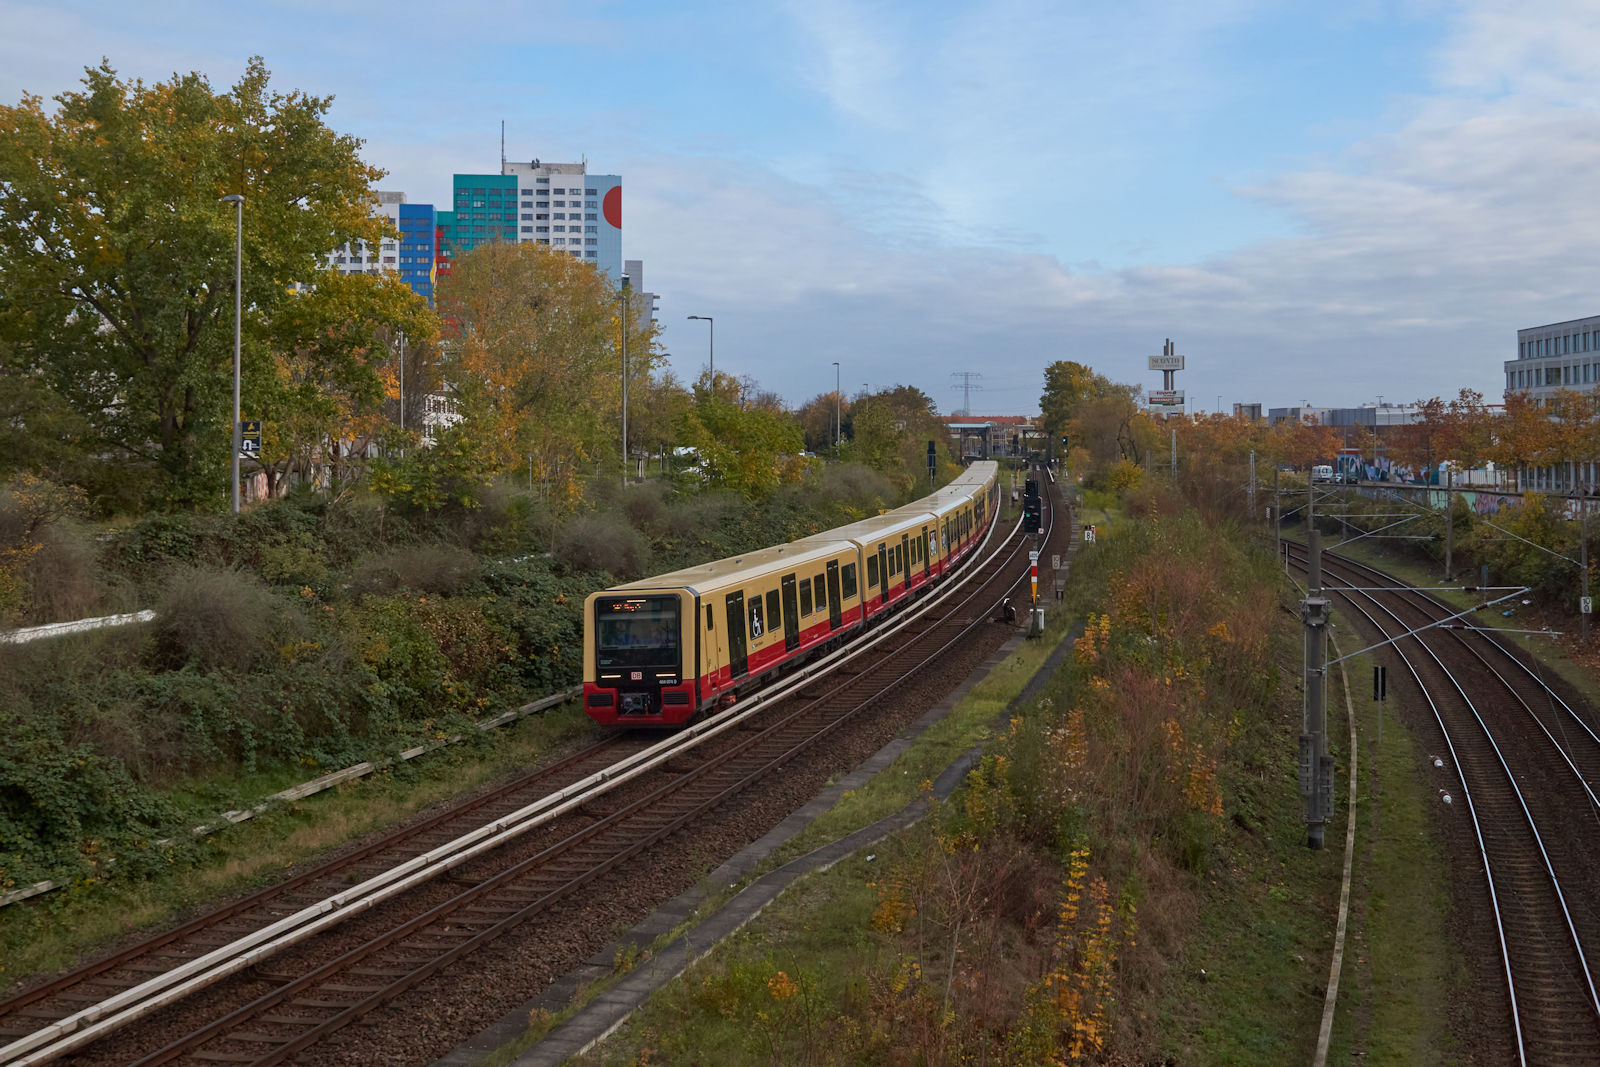 484 074 war am 11.11.2023 auf der Berliner S41 unterwegs. Auf seiner Runde über den Ring hat der Zug den Bahnhof Storkower Straße hinter sich gelassen und wird in Kürze die Station Landsberger Allee erreichen.